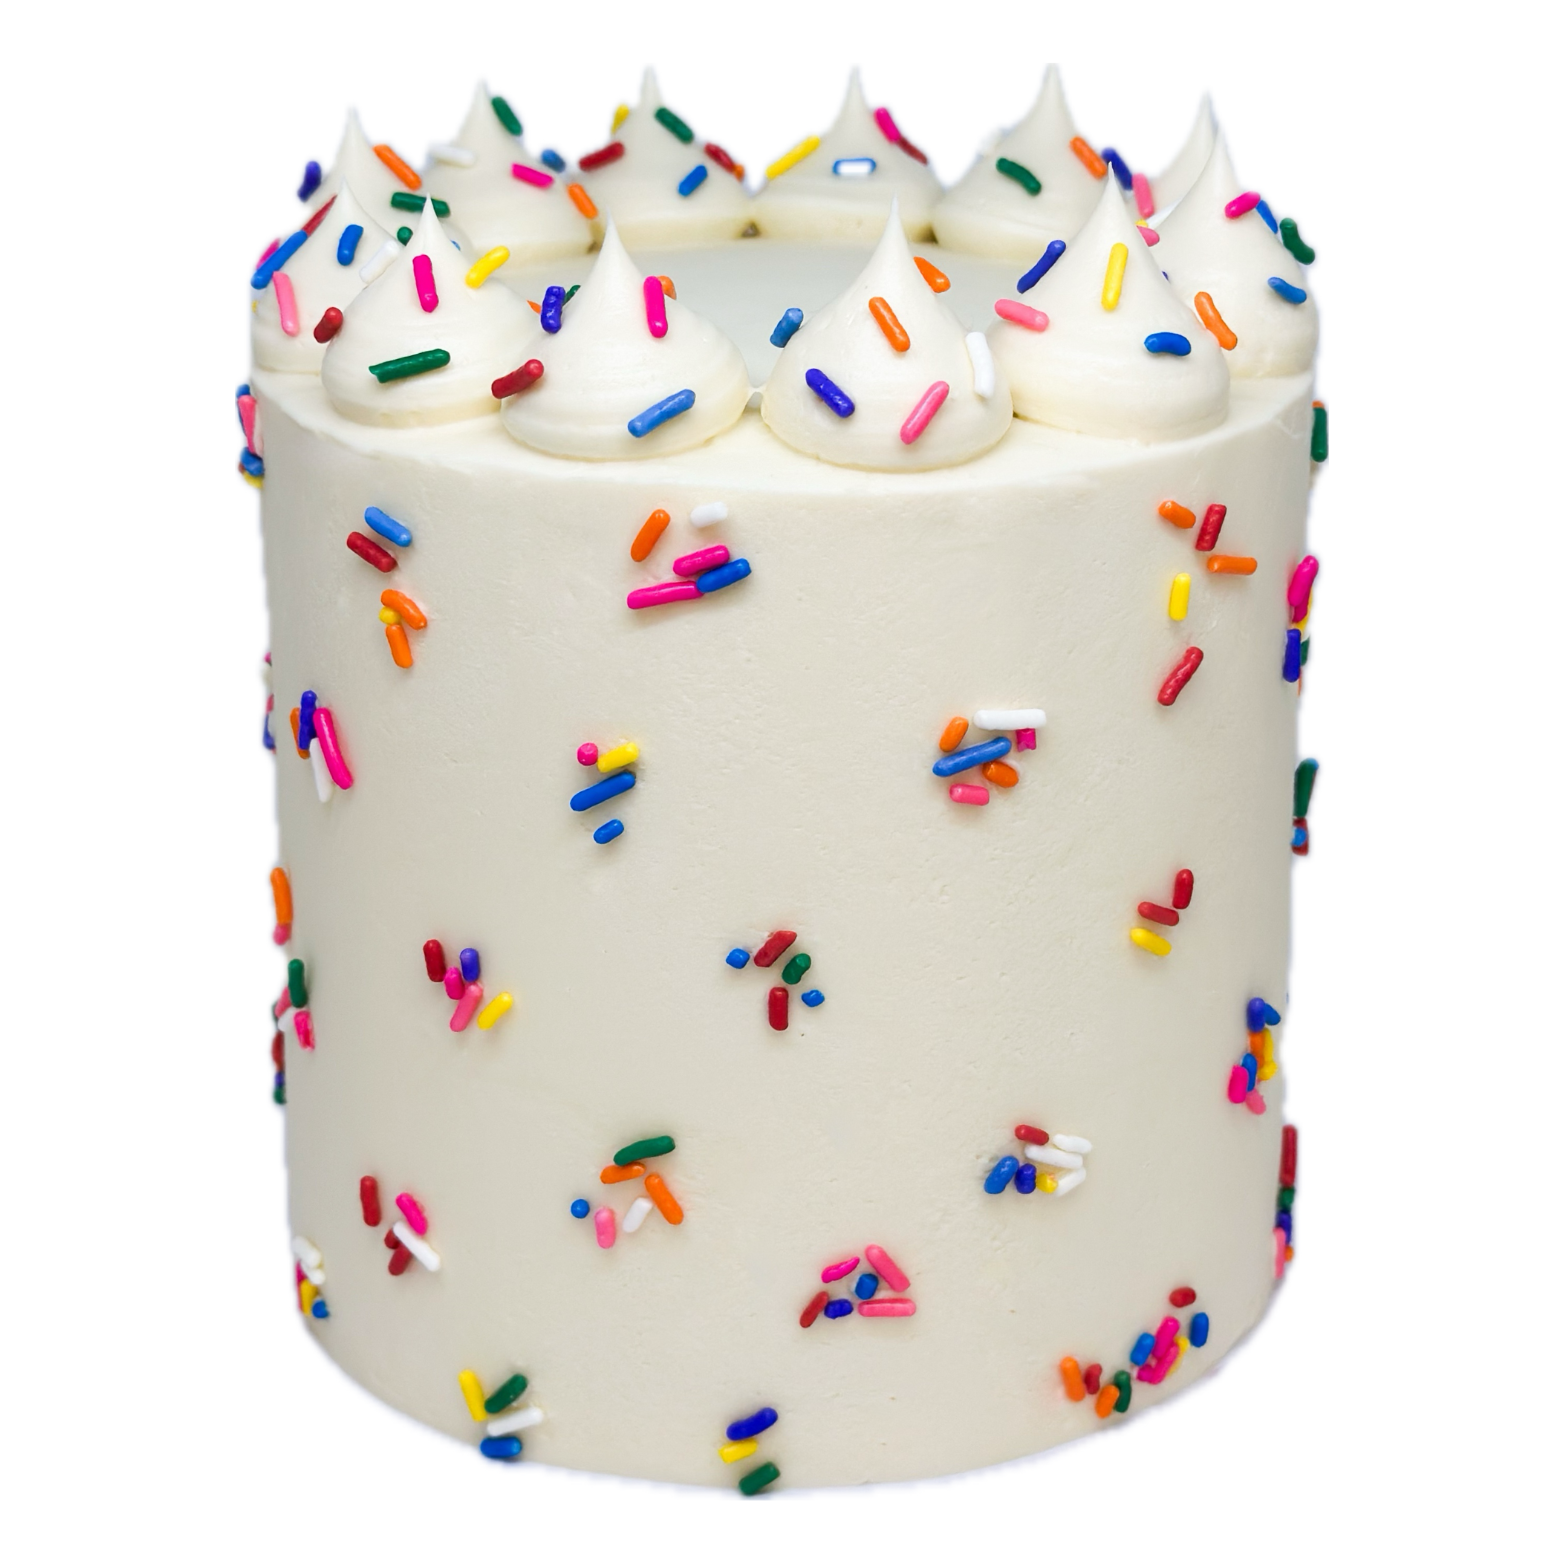 The Celebration Cake